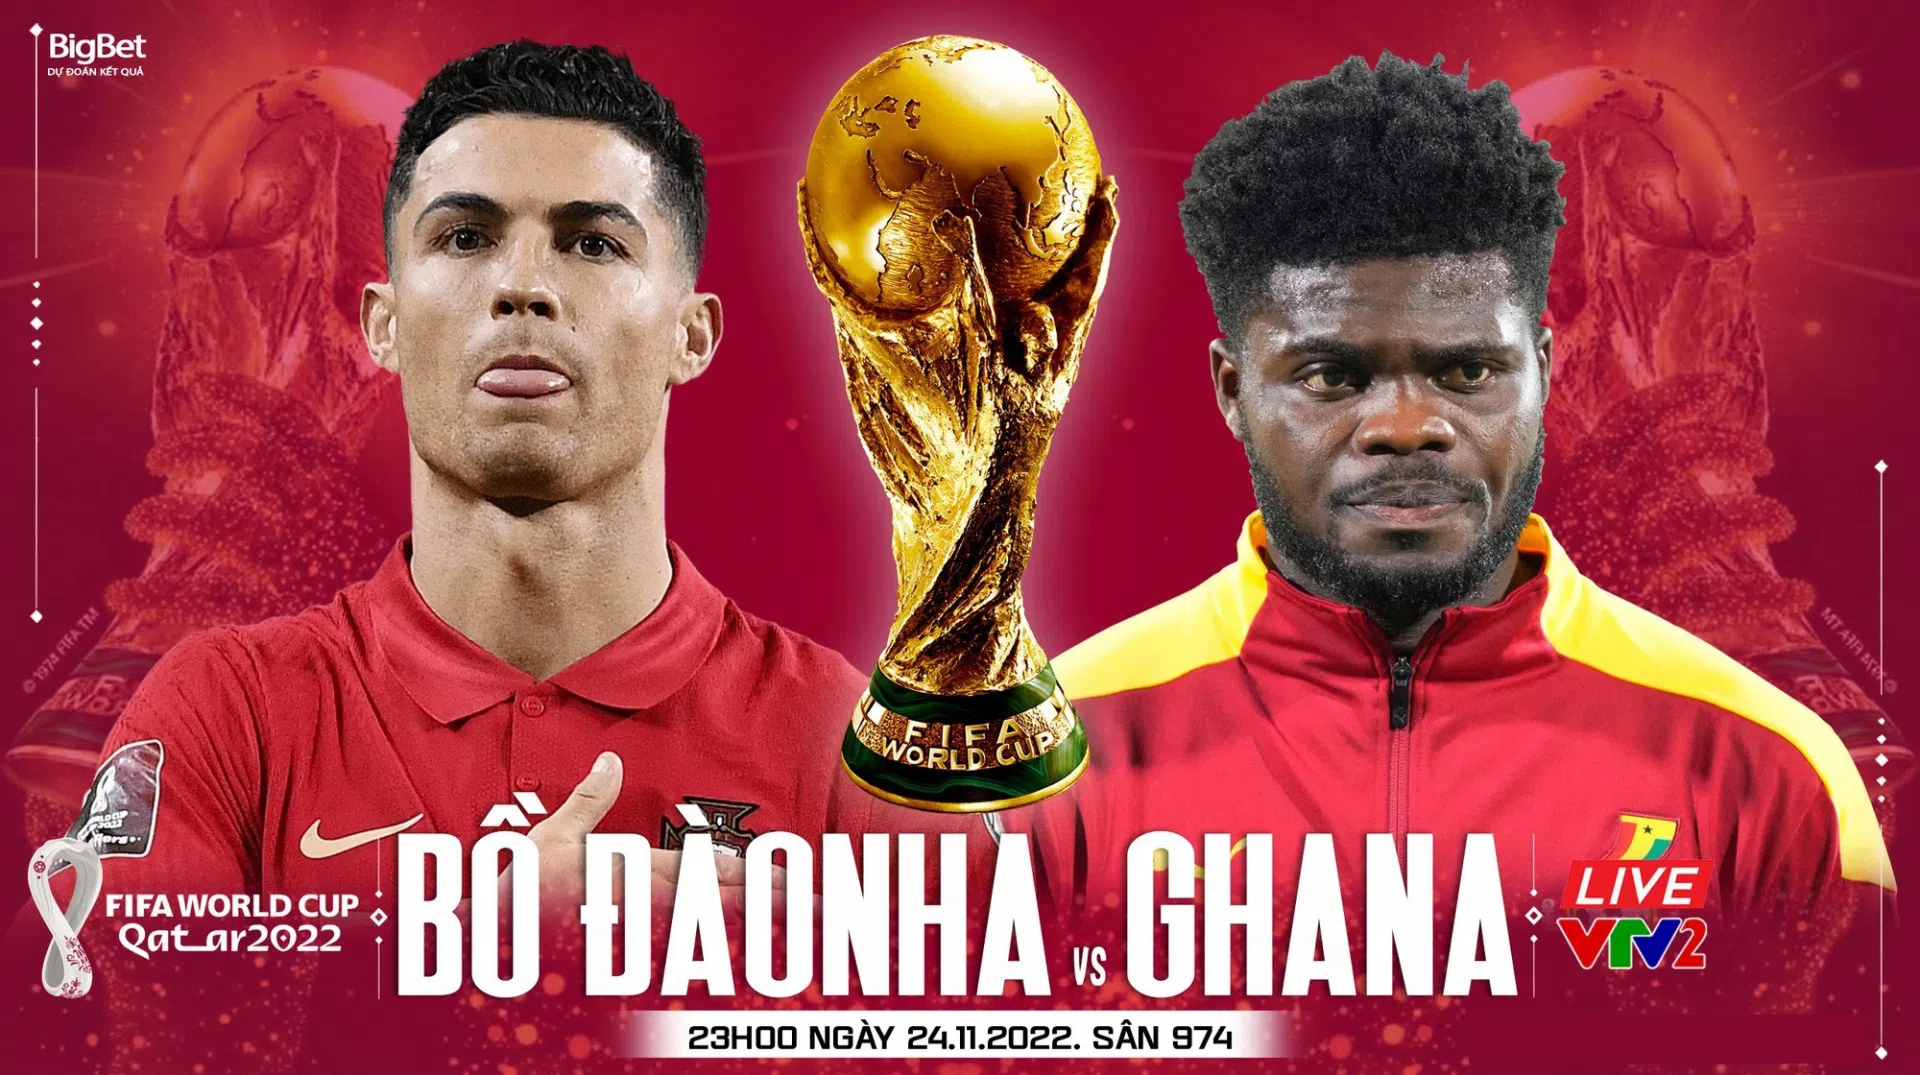 Nhận định Bồ Đào Nha vs Ghana (23h00 24/11/2022) World Cup 2022